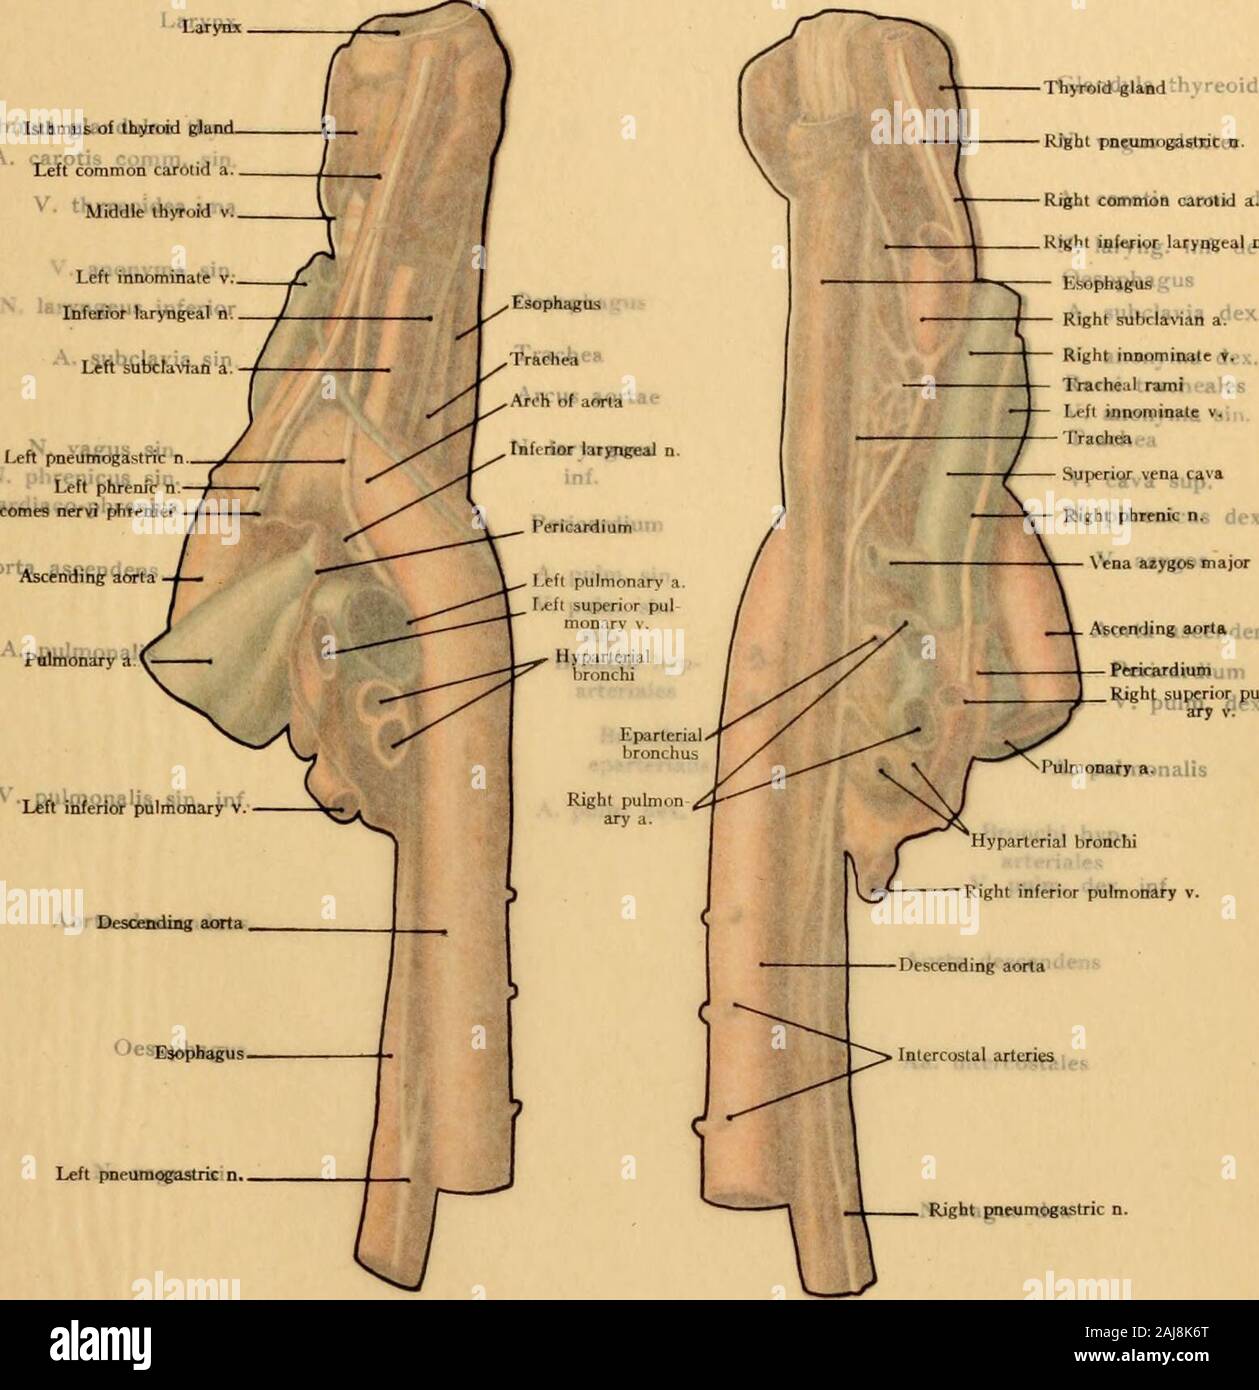 Texte et Atlas-livre de l'anatomie topographique et appliquée de l'rdre . fixation sternale-ment de la troisième du cartilage costal gauche, six centimètres derrière le sternum ; au niveau de la première espace intercostal, c'est, cependant, seulement deux centimètres derrière le sternum [i. e., derrière la marge droite du sternum-Ed.]. Le droit de l'aorte convexe s'étend à l'rightsternal marge. C'est dans cette situation que d'anévrismes de l'aorte ascendante sont particularlyprone d'aller de l'avant la paroi thoracique antérieure et de rupture à l'externe ; ils peuvent aussi occasion-ally perforer dans le droit ca pleural Banque D'Images